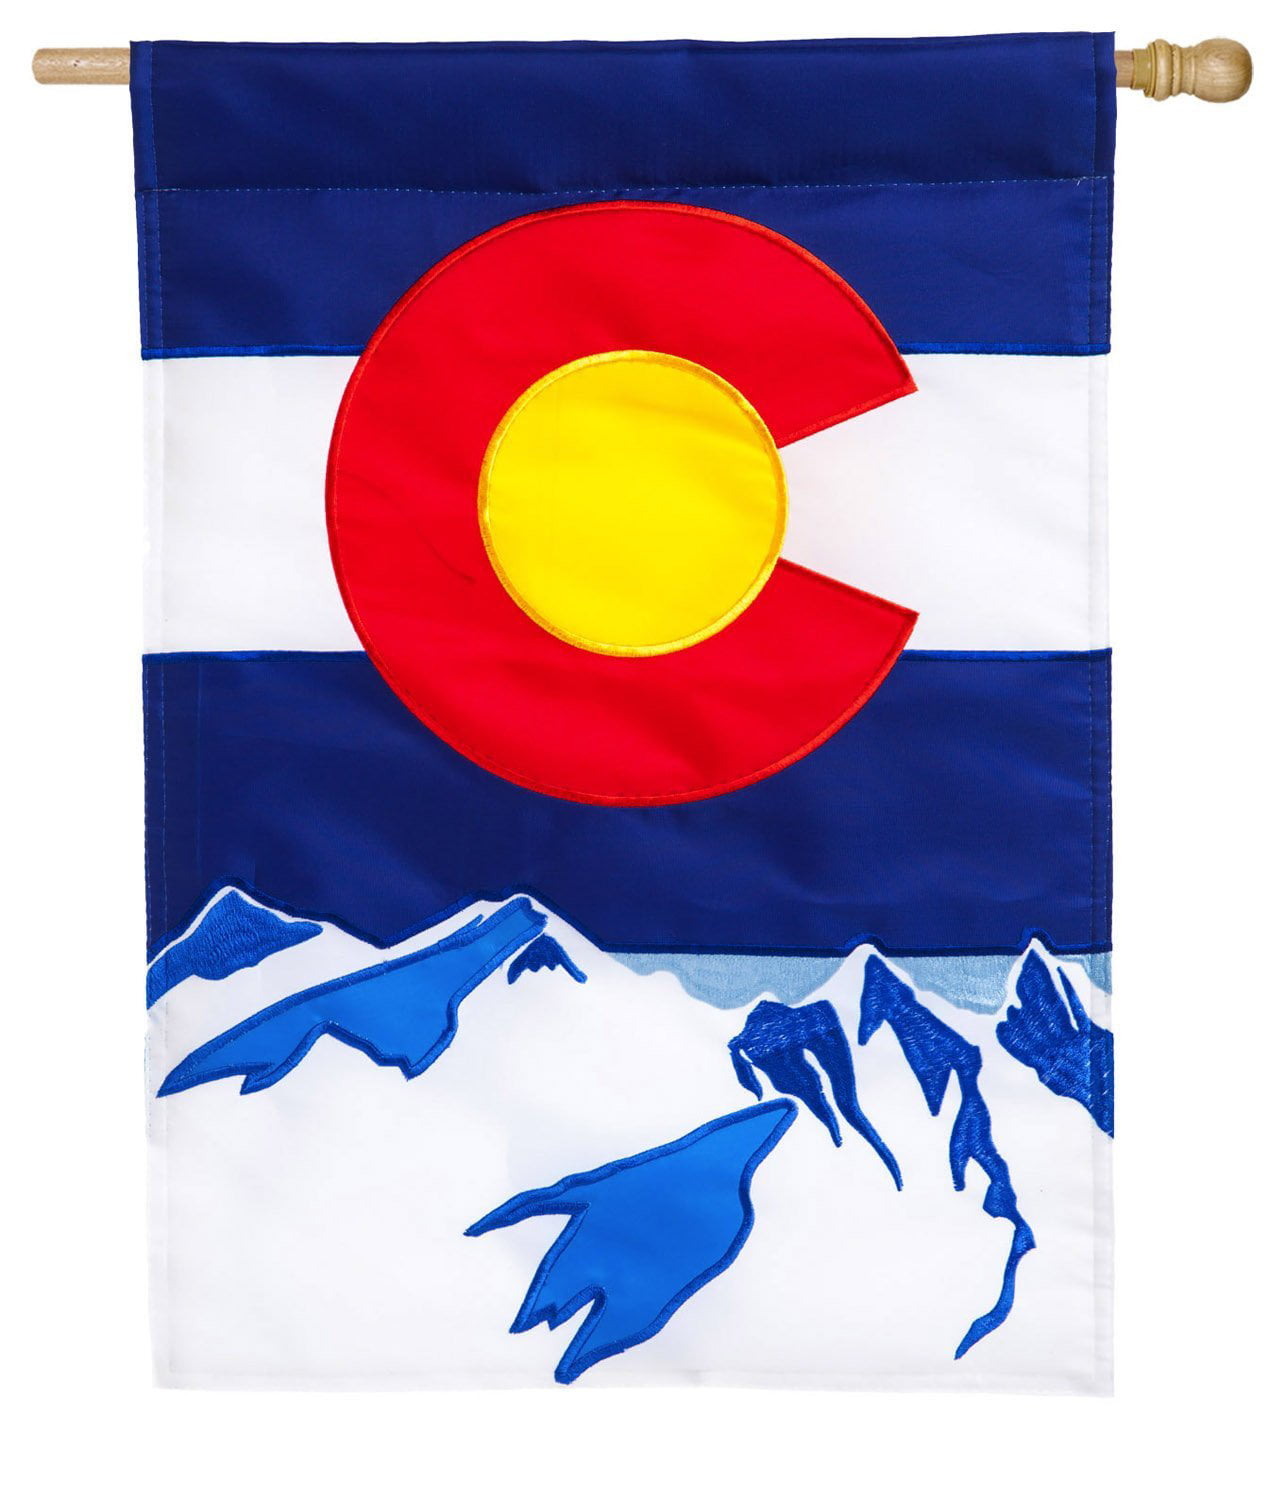 Evergreen Colorado State Applique House Flag, 28 x 44